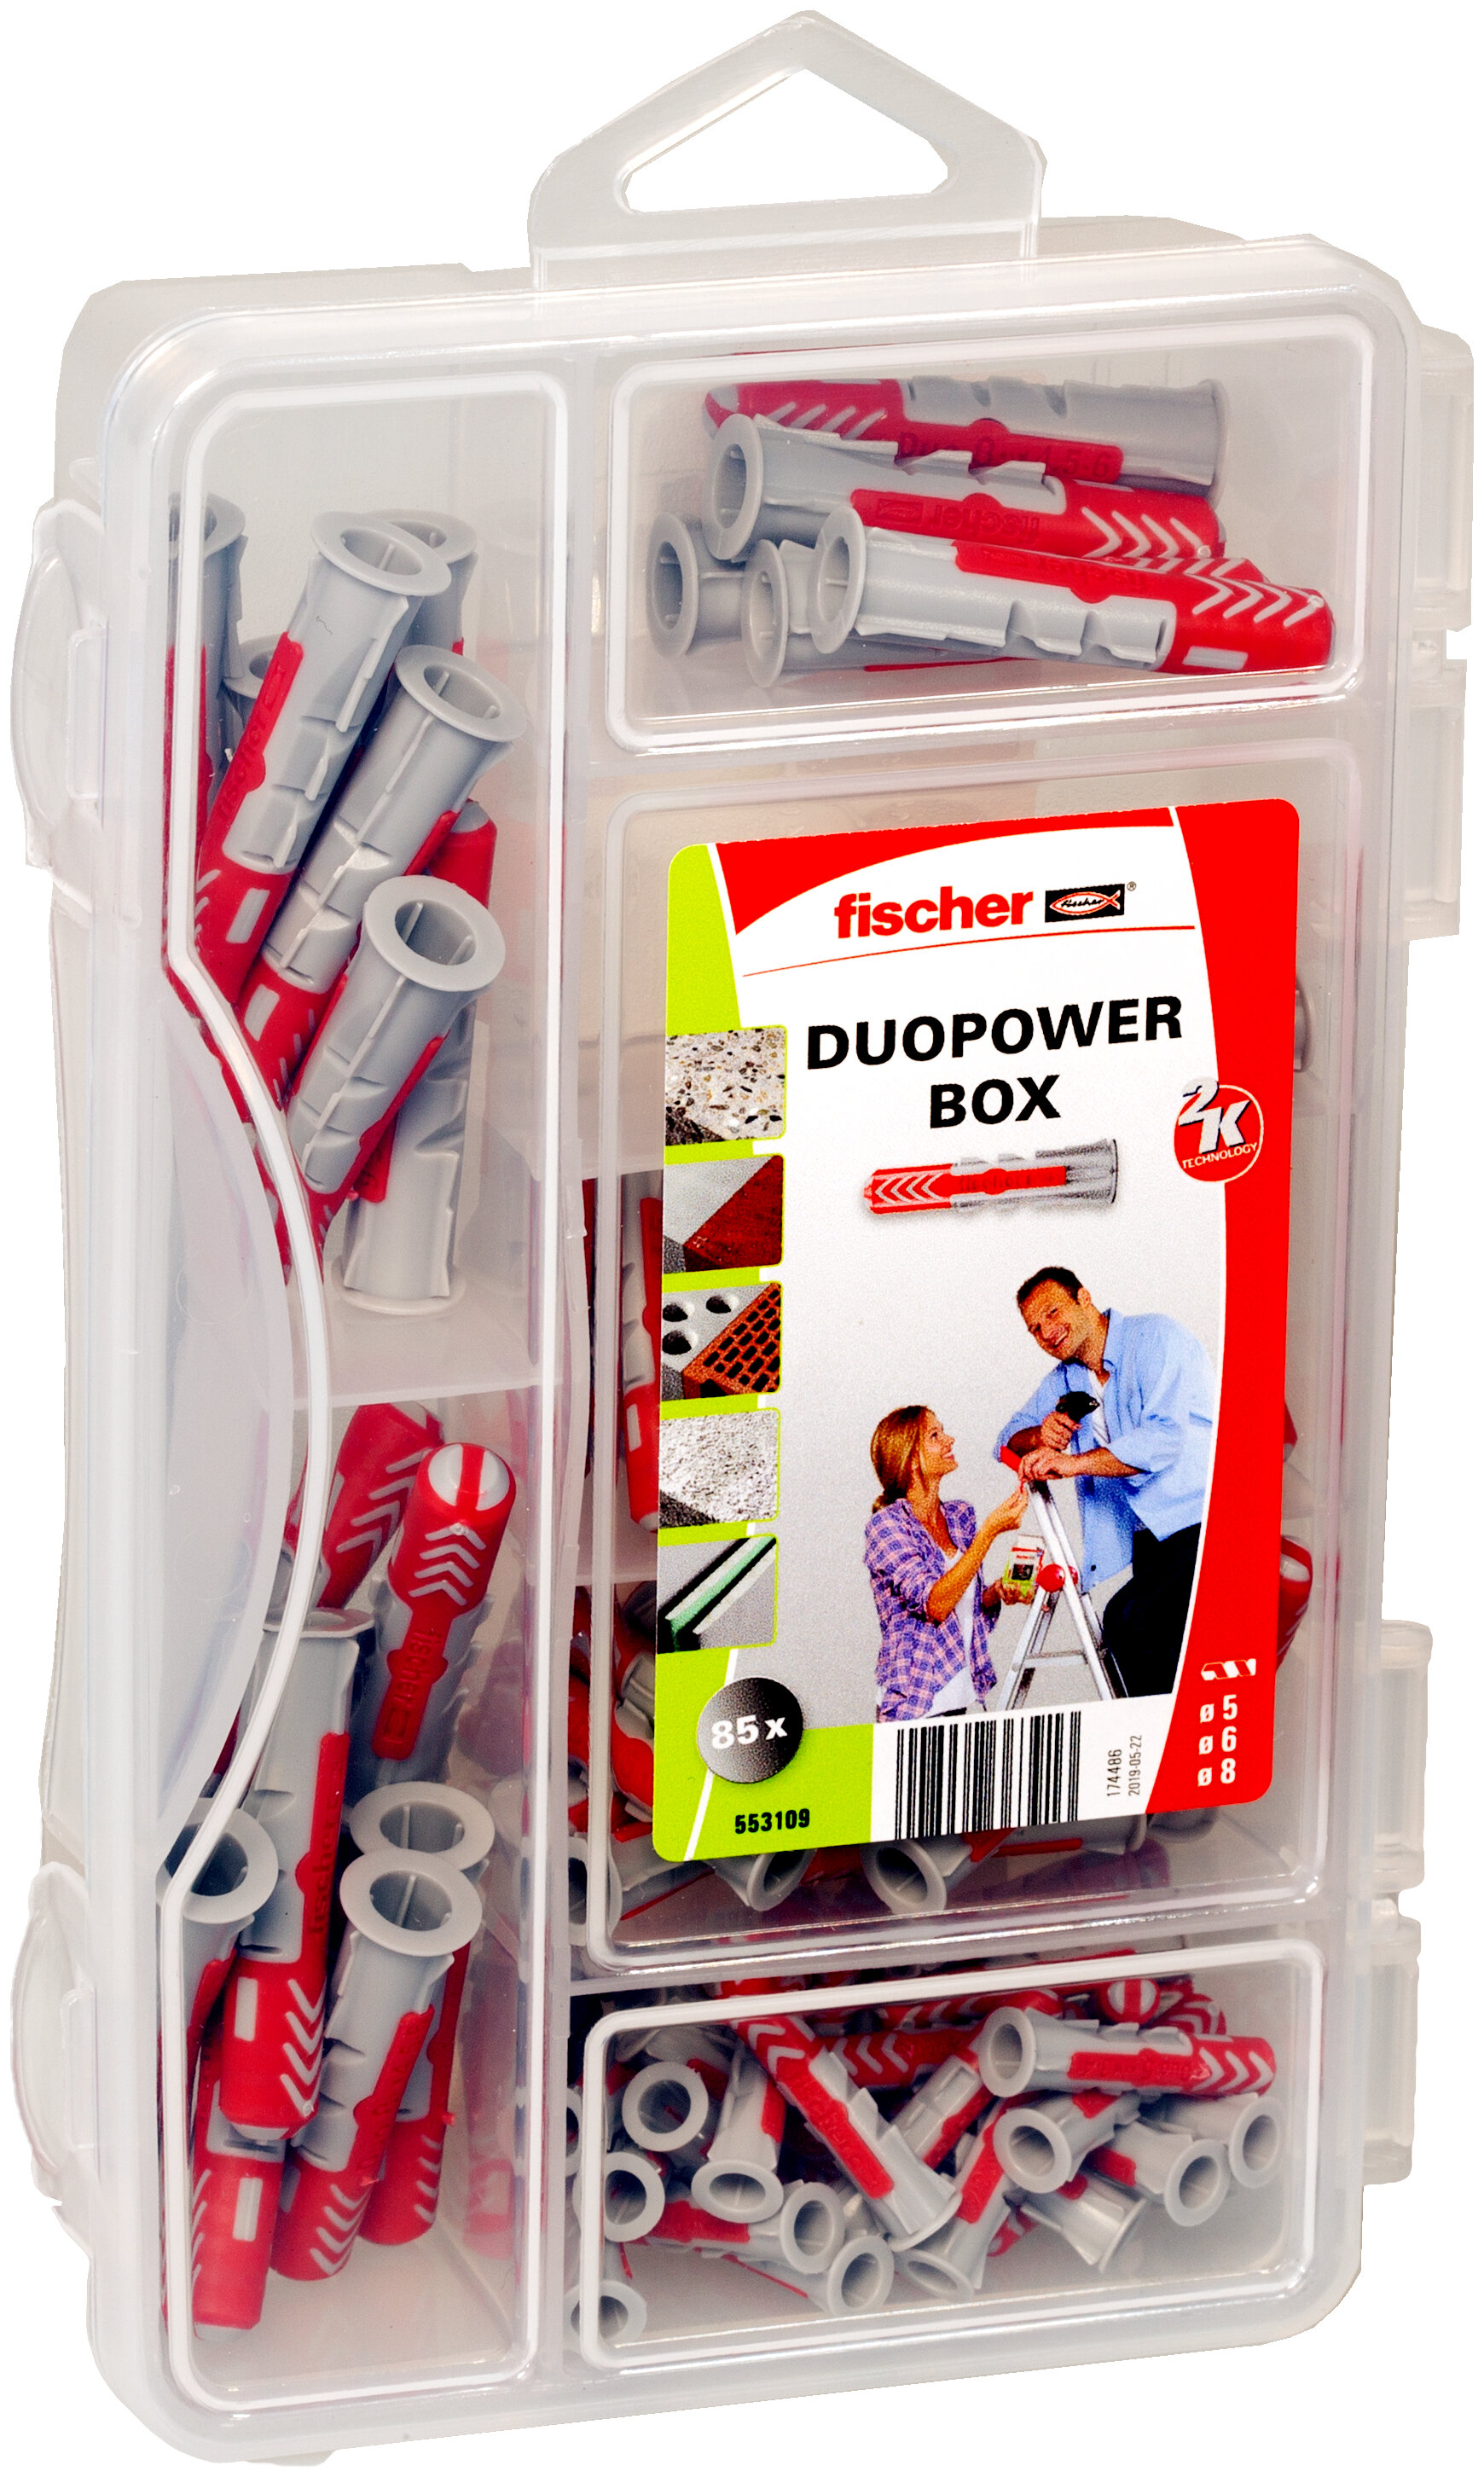 DuoPower-Box mini